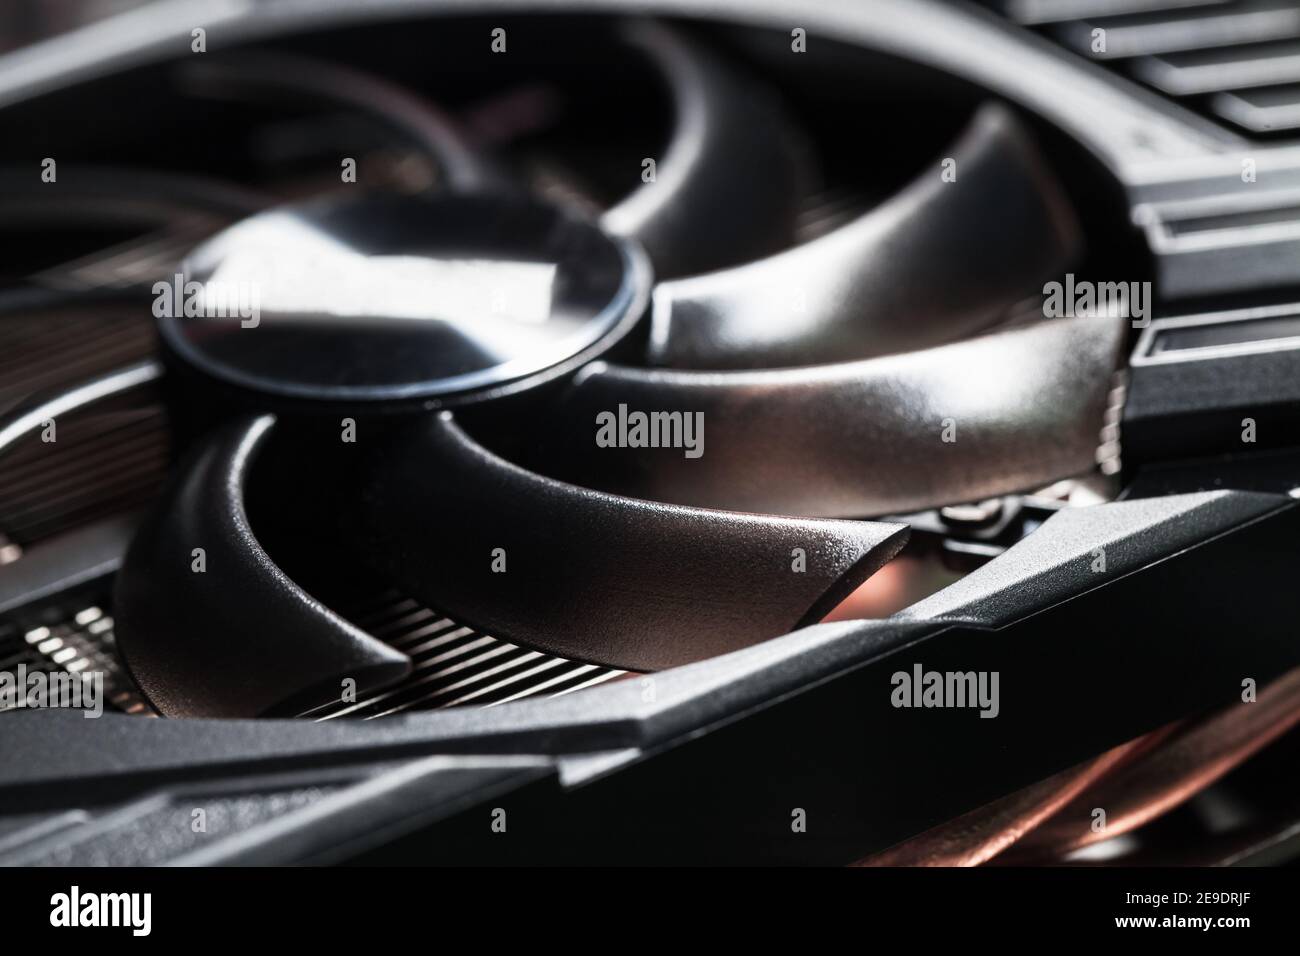 Neuer glänzender schwarzer Kunststoff GPU Kühler, Nahaufnahme Foto mit selektivem Fokus. Dieser Lüfter ist auf einer Grafikkarte montiert, um die GPU zu kühlen Stockfoto